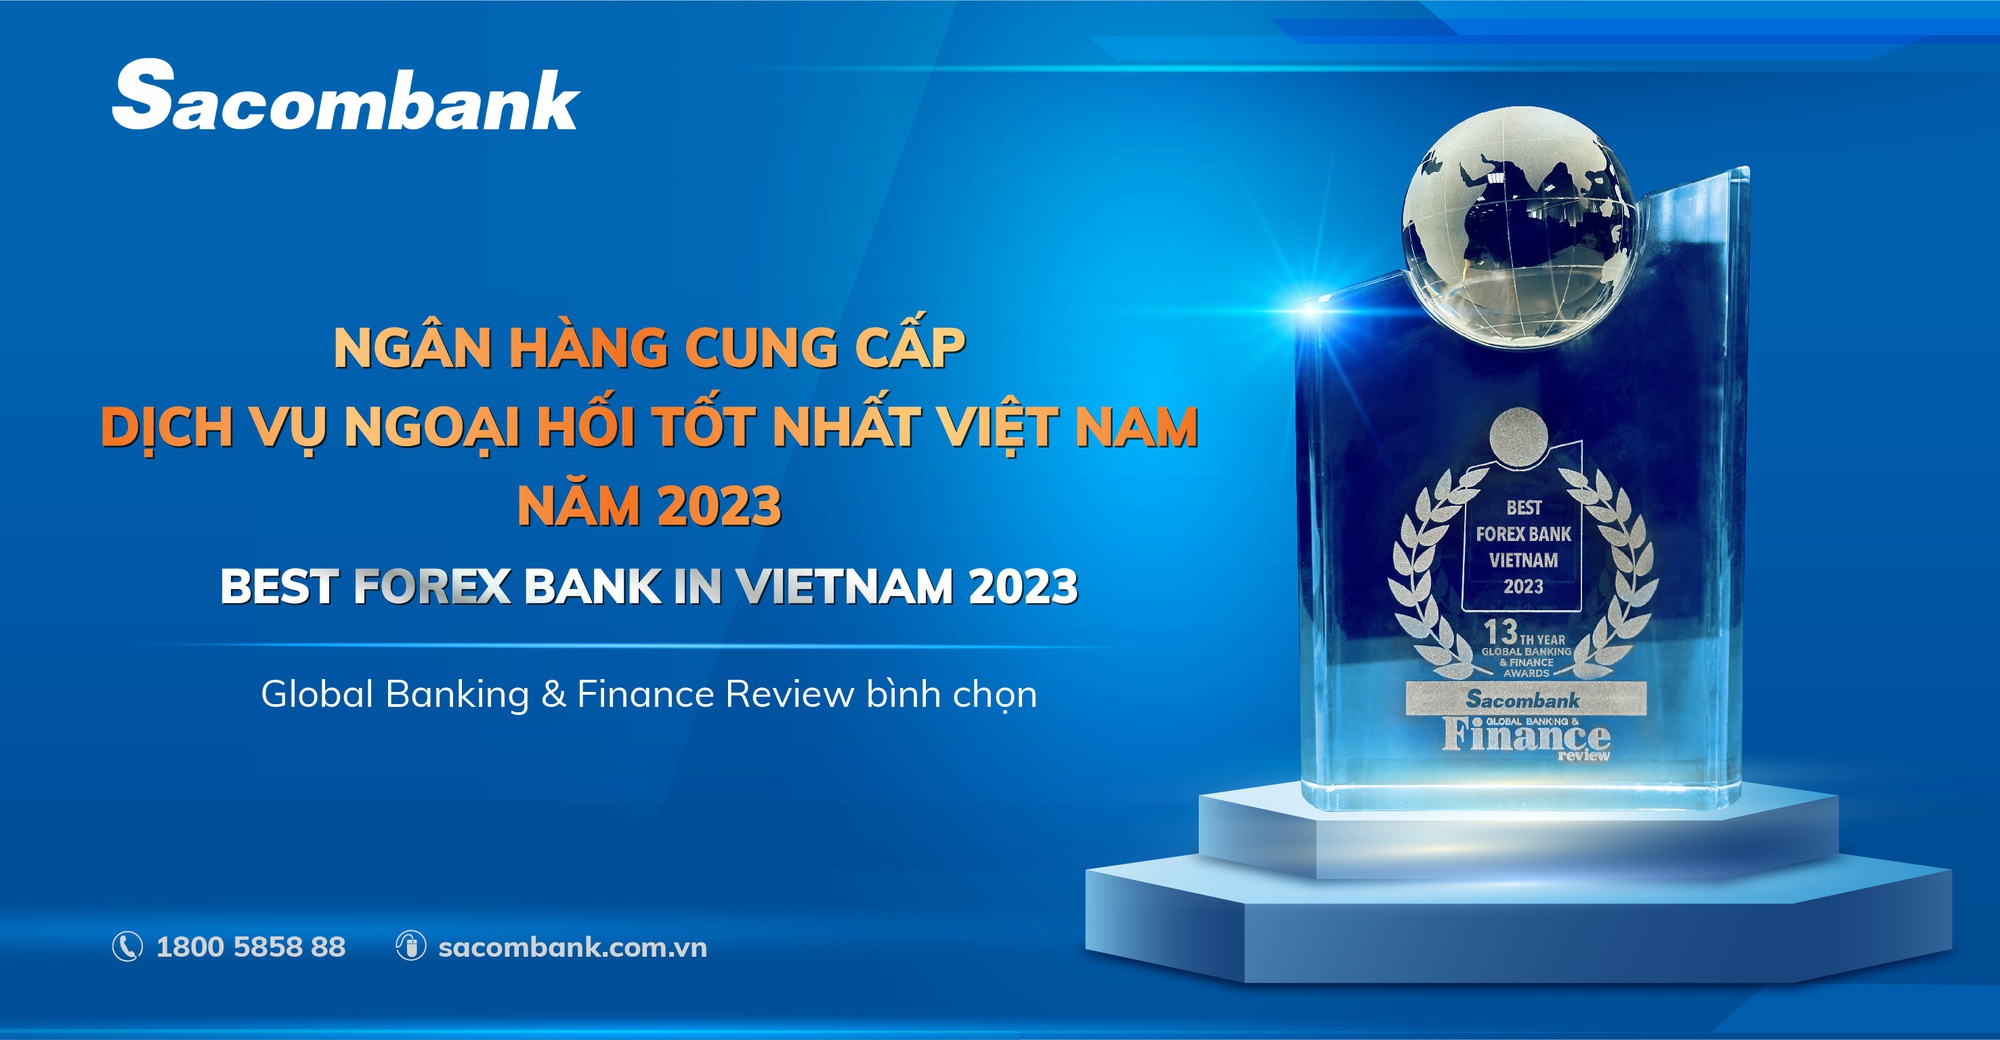 Sacombank được công nhận là ngân hàng cung cấp dịch vụ ngoại hối tốt nhất Việt Nam - Ảnh 2.